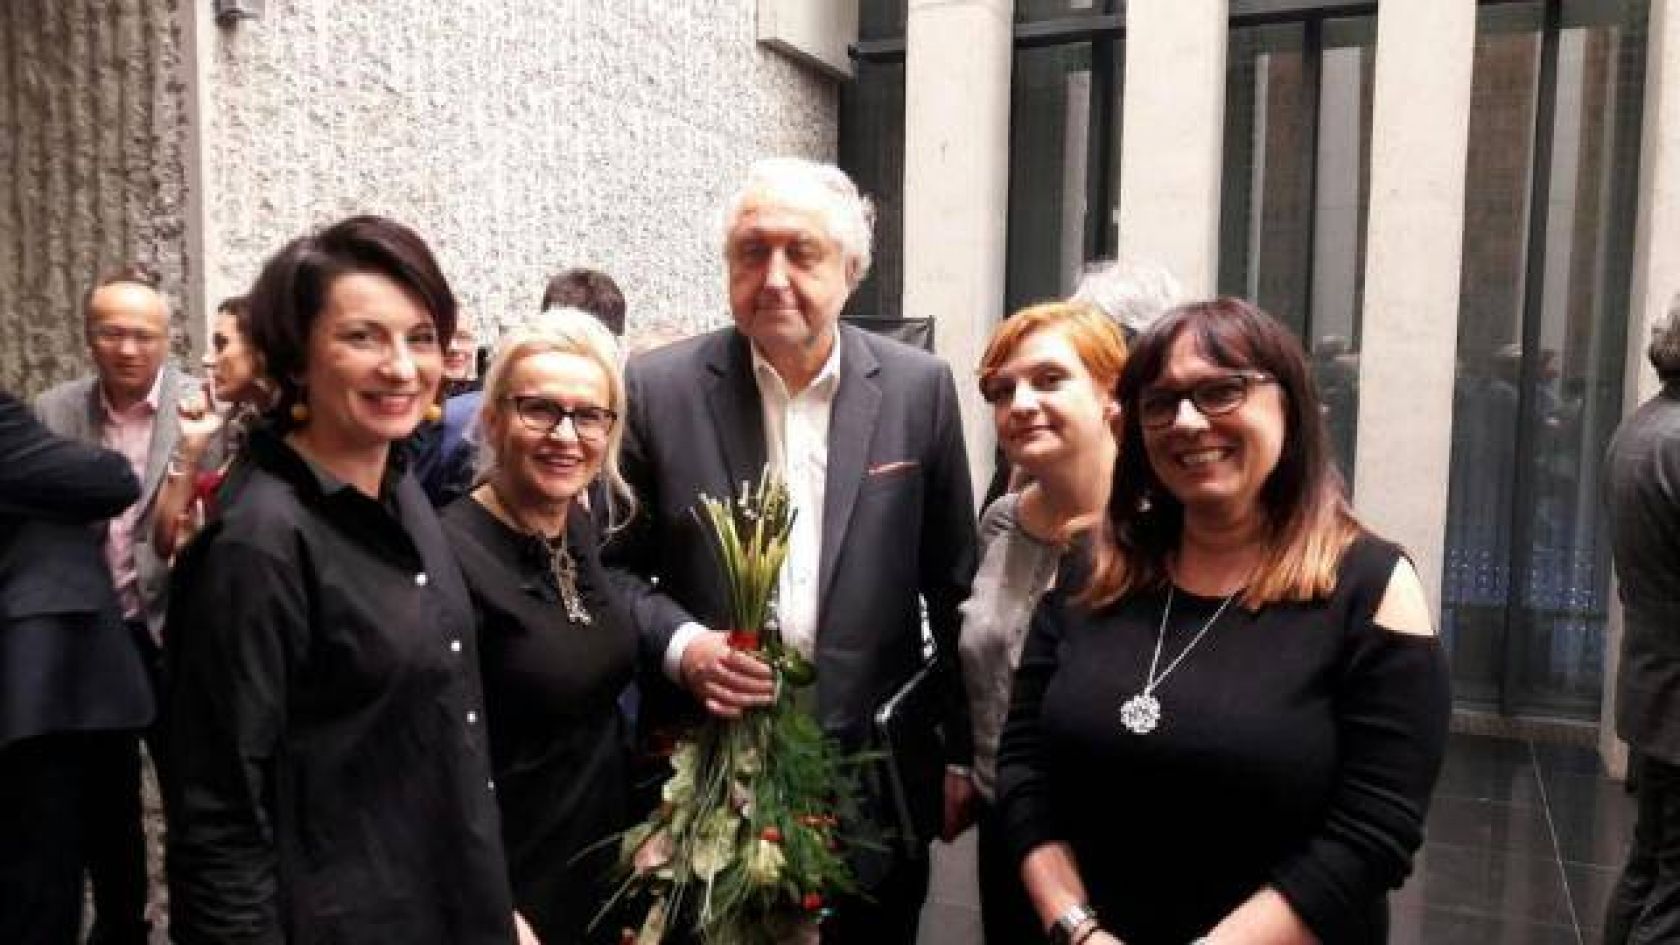 Justyna+Mazur+Ewa+Czerska+prof.Andrzej+Rzepliński